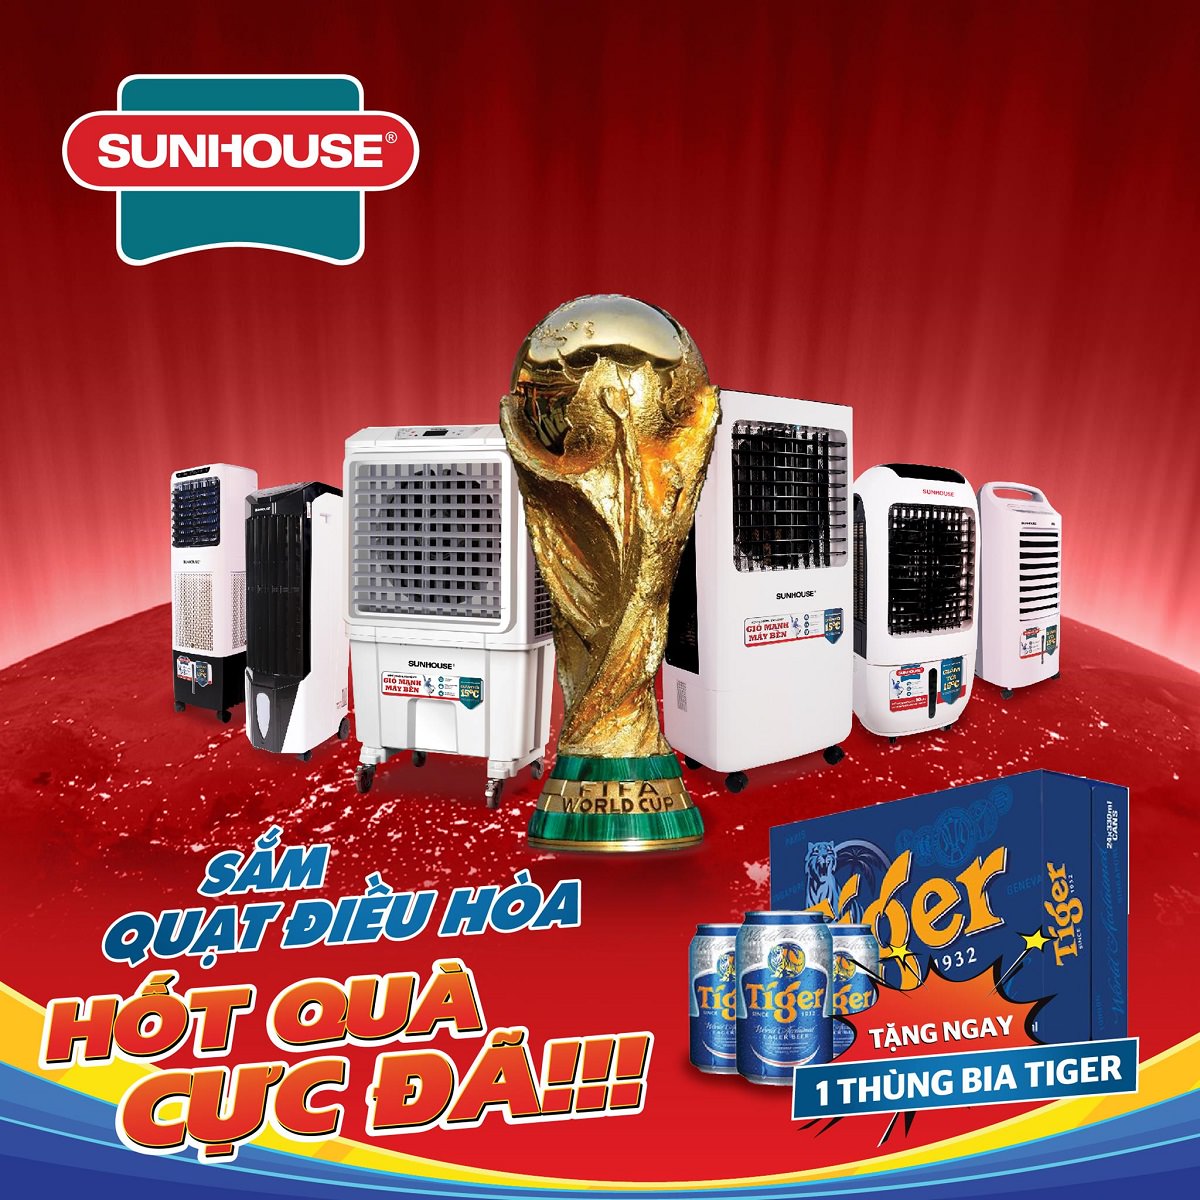 Cùng SUNHOUSE cuồng nhiệt chào đón World Cup 2018